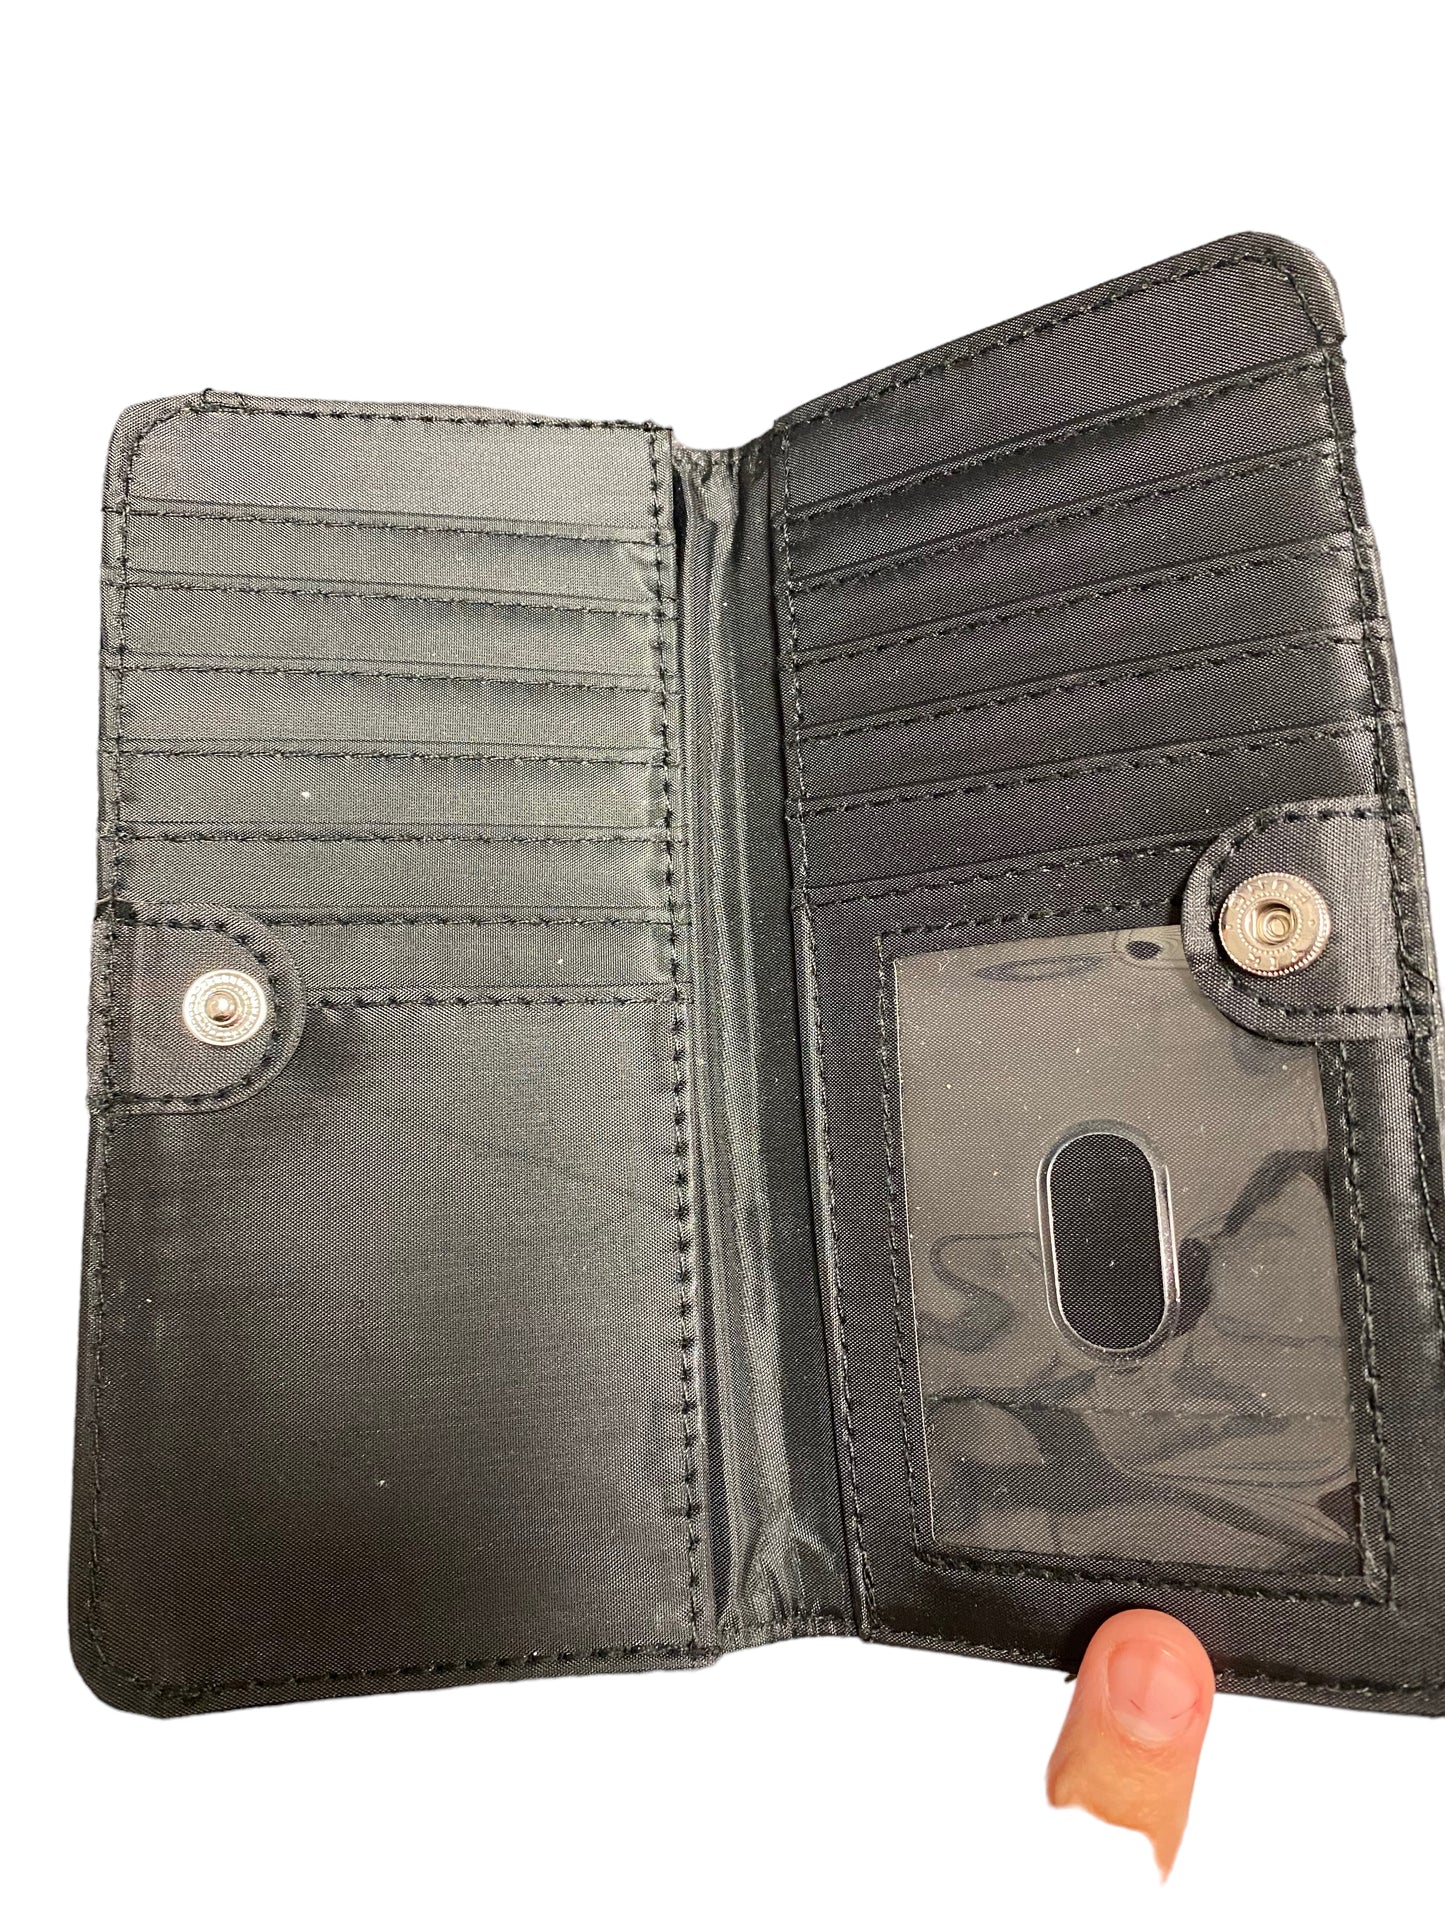 Wallet Cmc, Size Medium